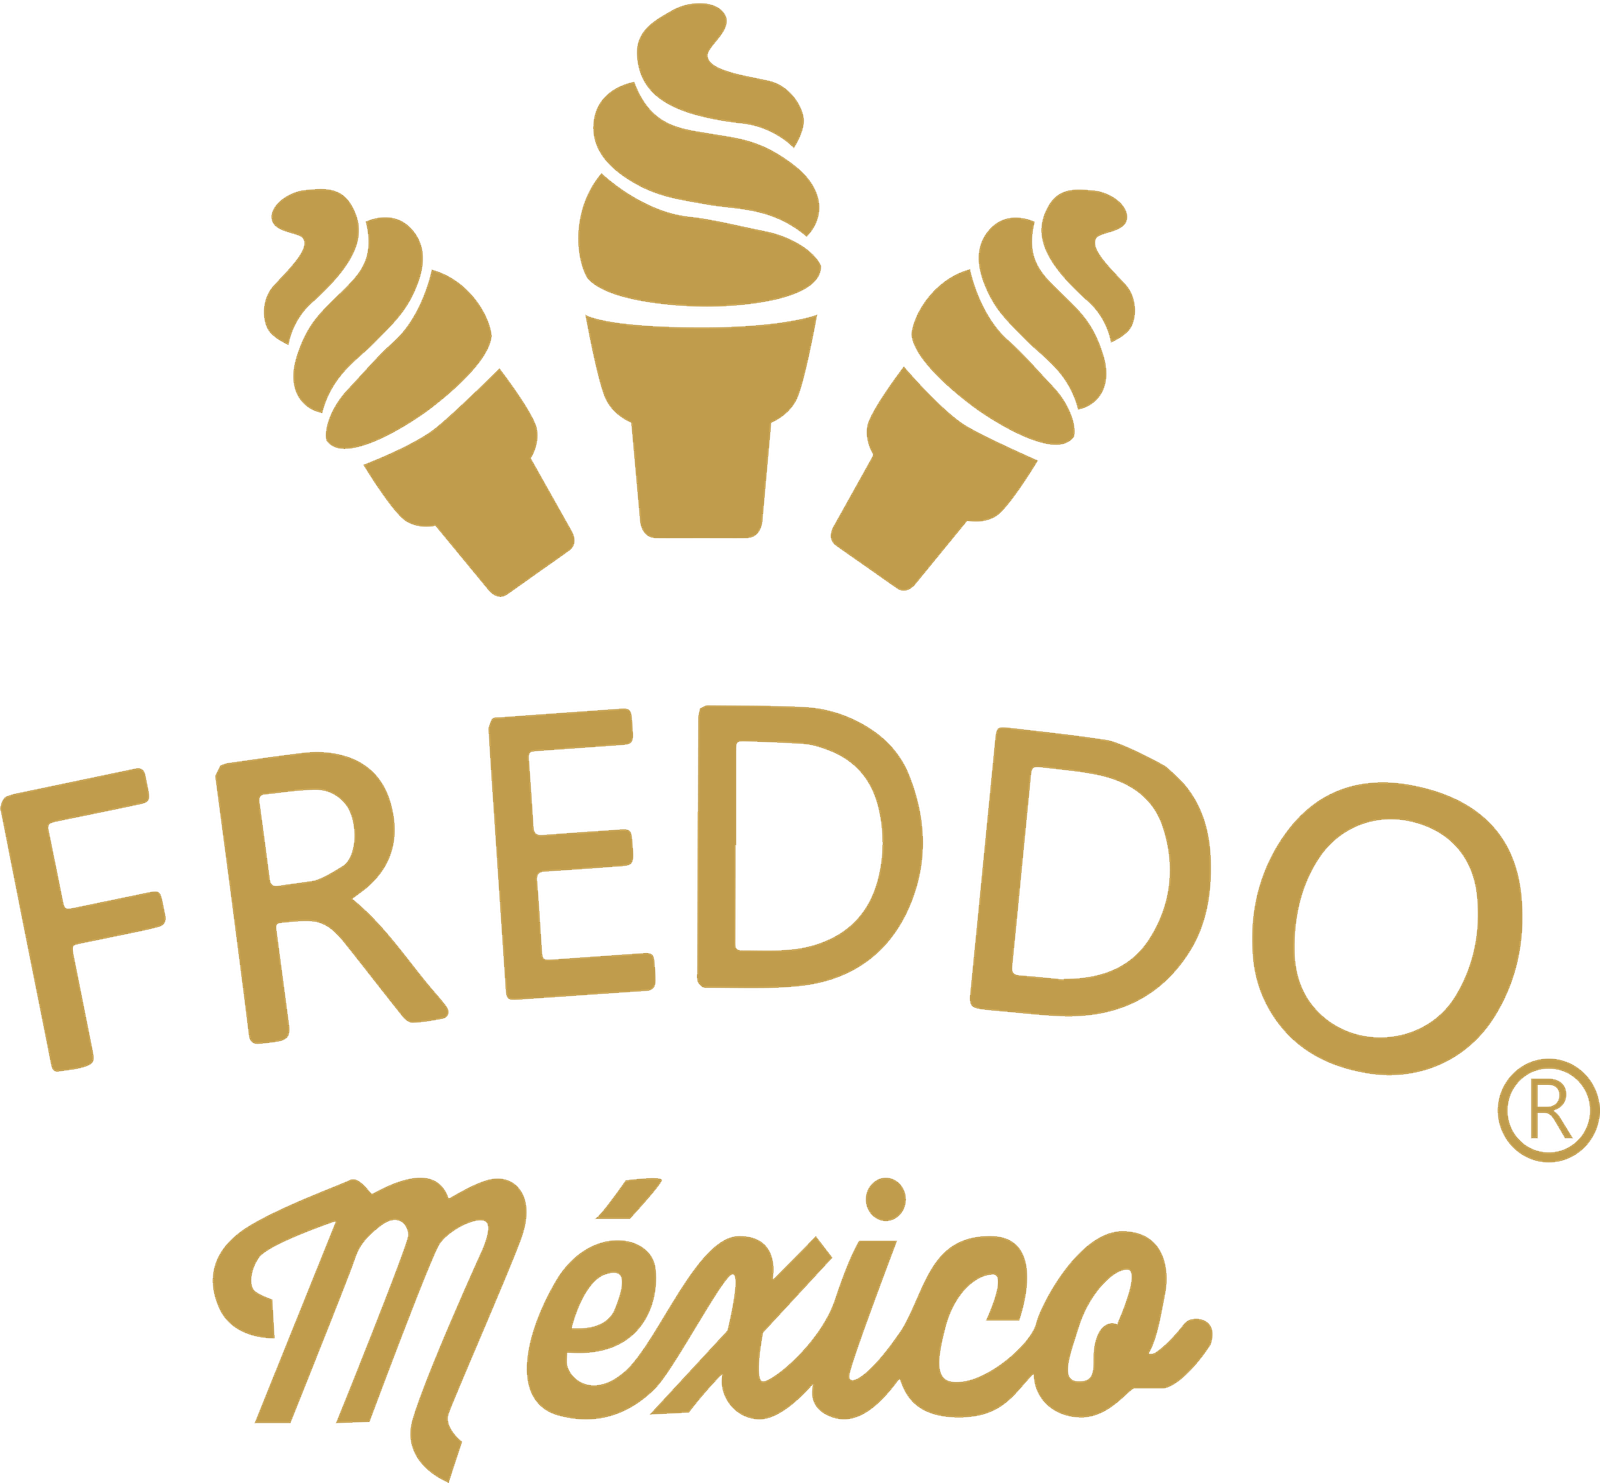 Freddo Logo